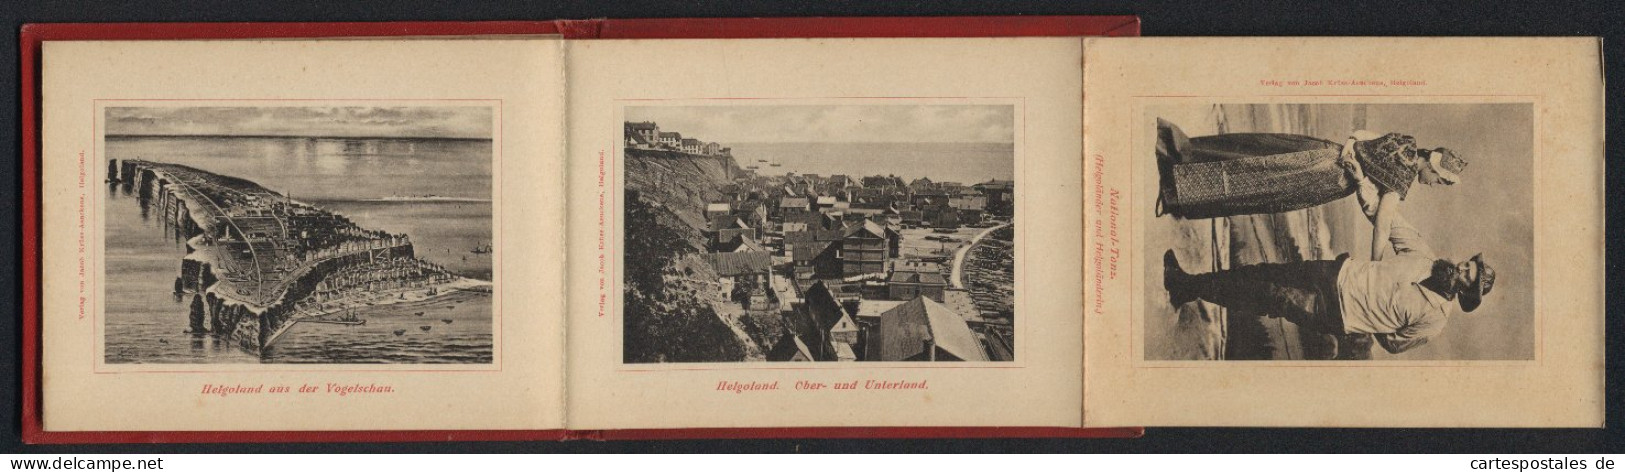 Leporello-Album Helgoland Mit 12 Lichdruck-Ansichten, Helgoländer In Tracht, Ober- Und Unterland, Fahrstuhl, Mönch  - Lithographies